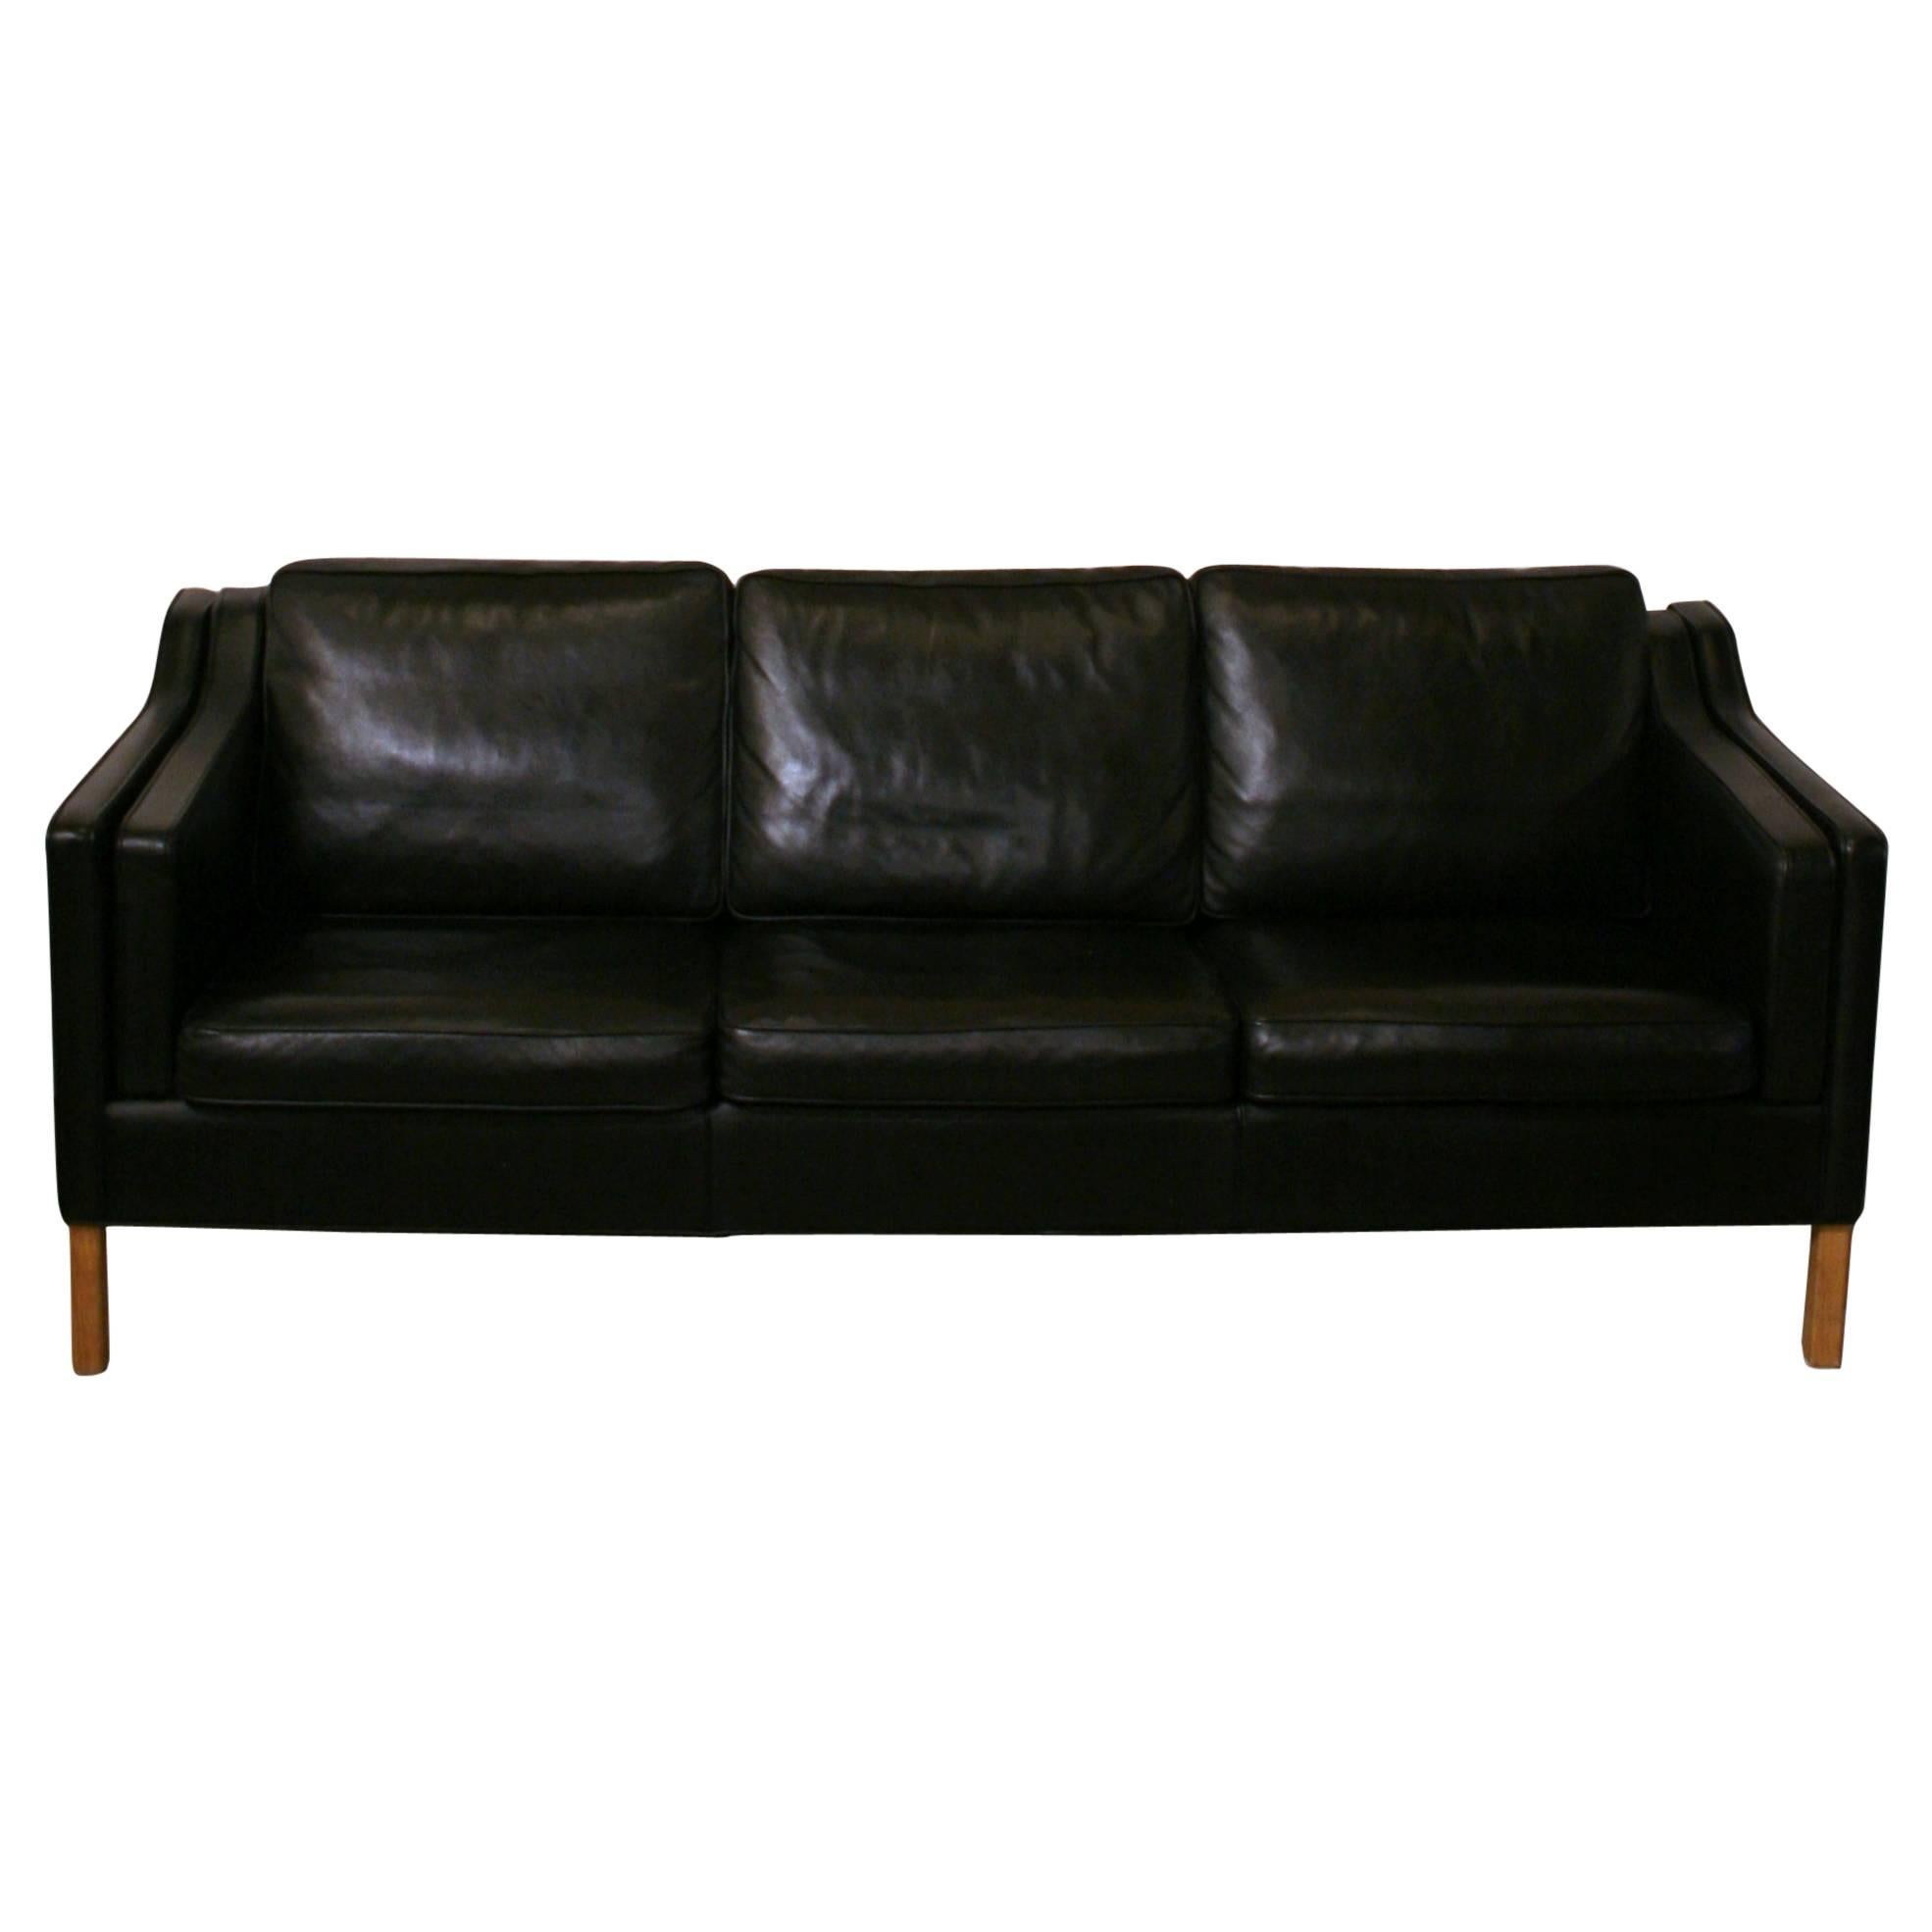 Vintage Danish Leather Three-Seat Sofa